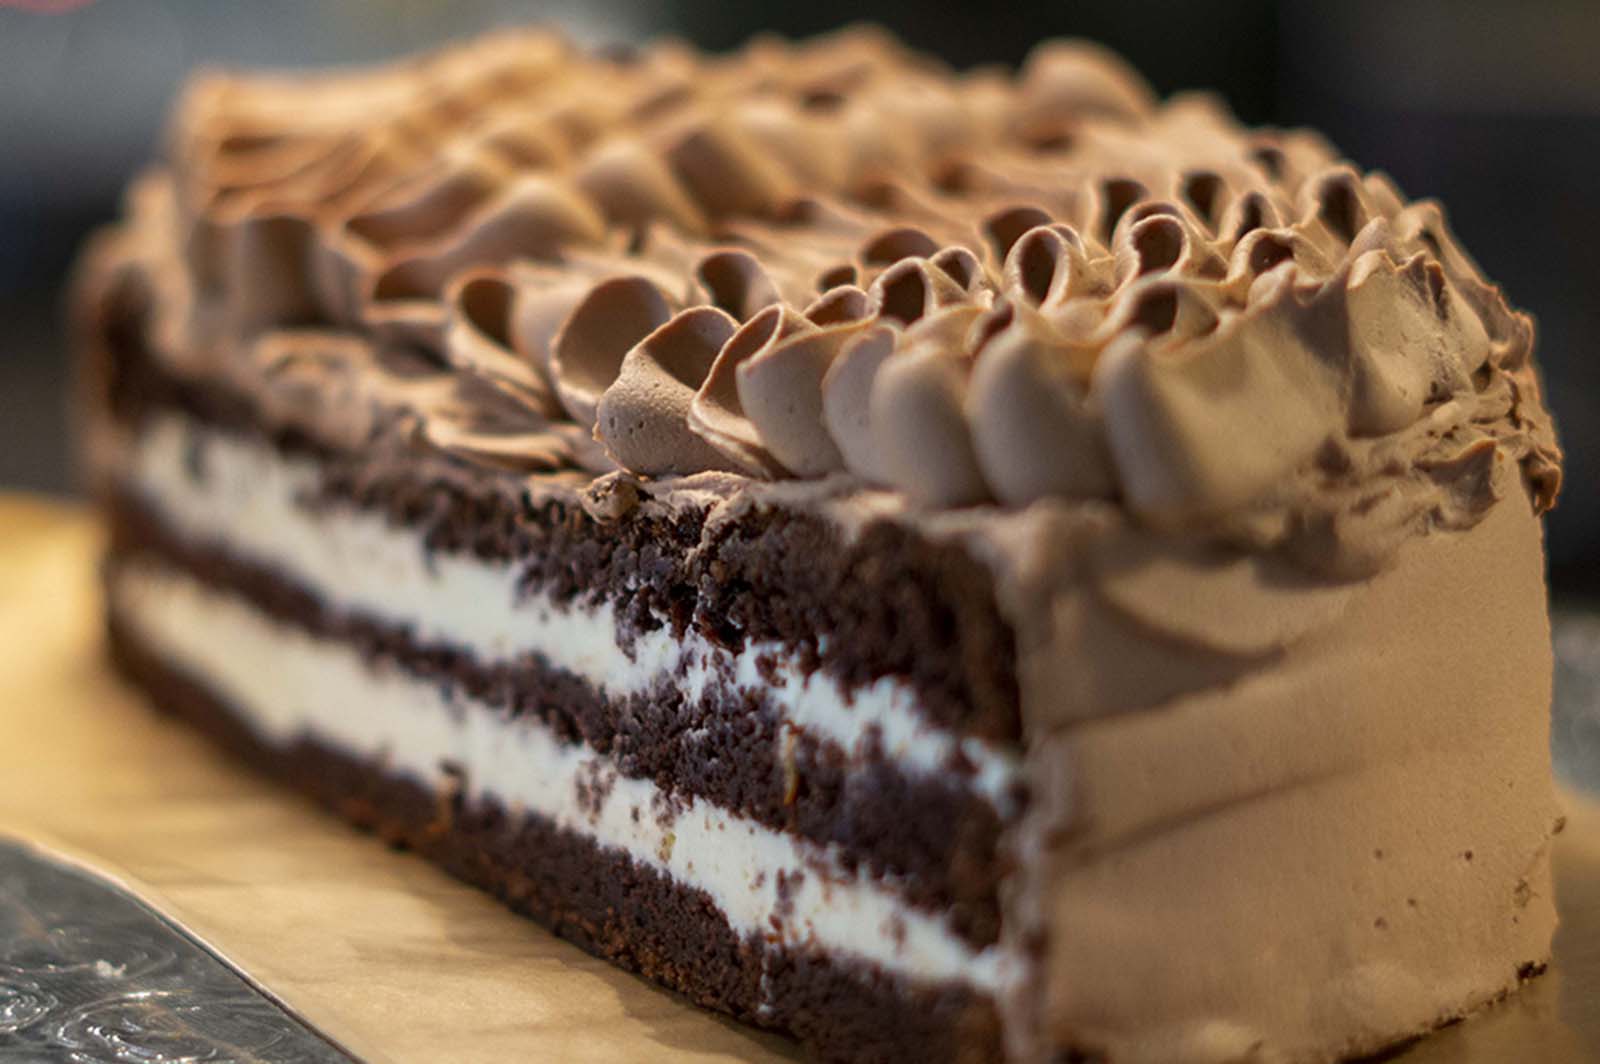 trelags sjokoladekake med sitronkremfyll i midten og sjokoladekrem på toppen og rundt